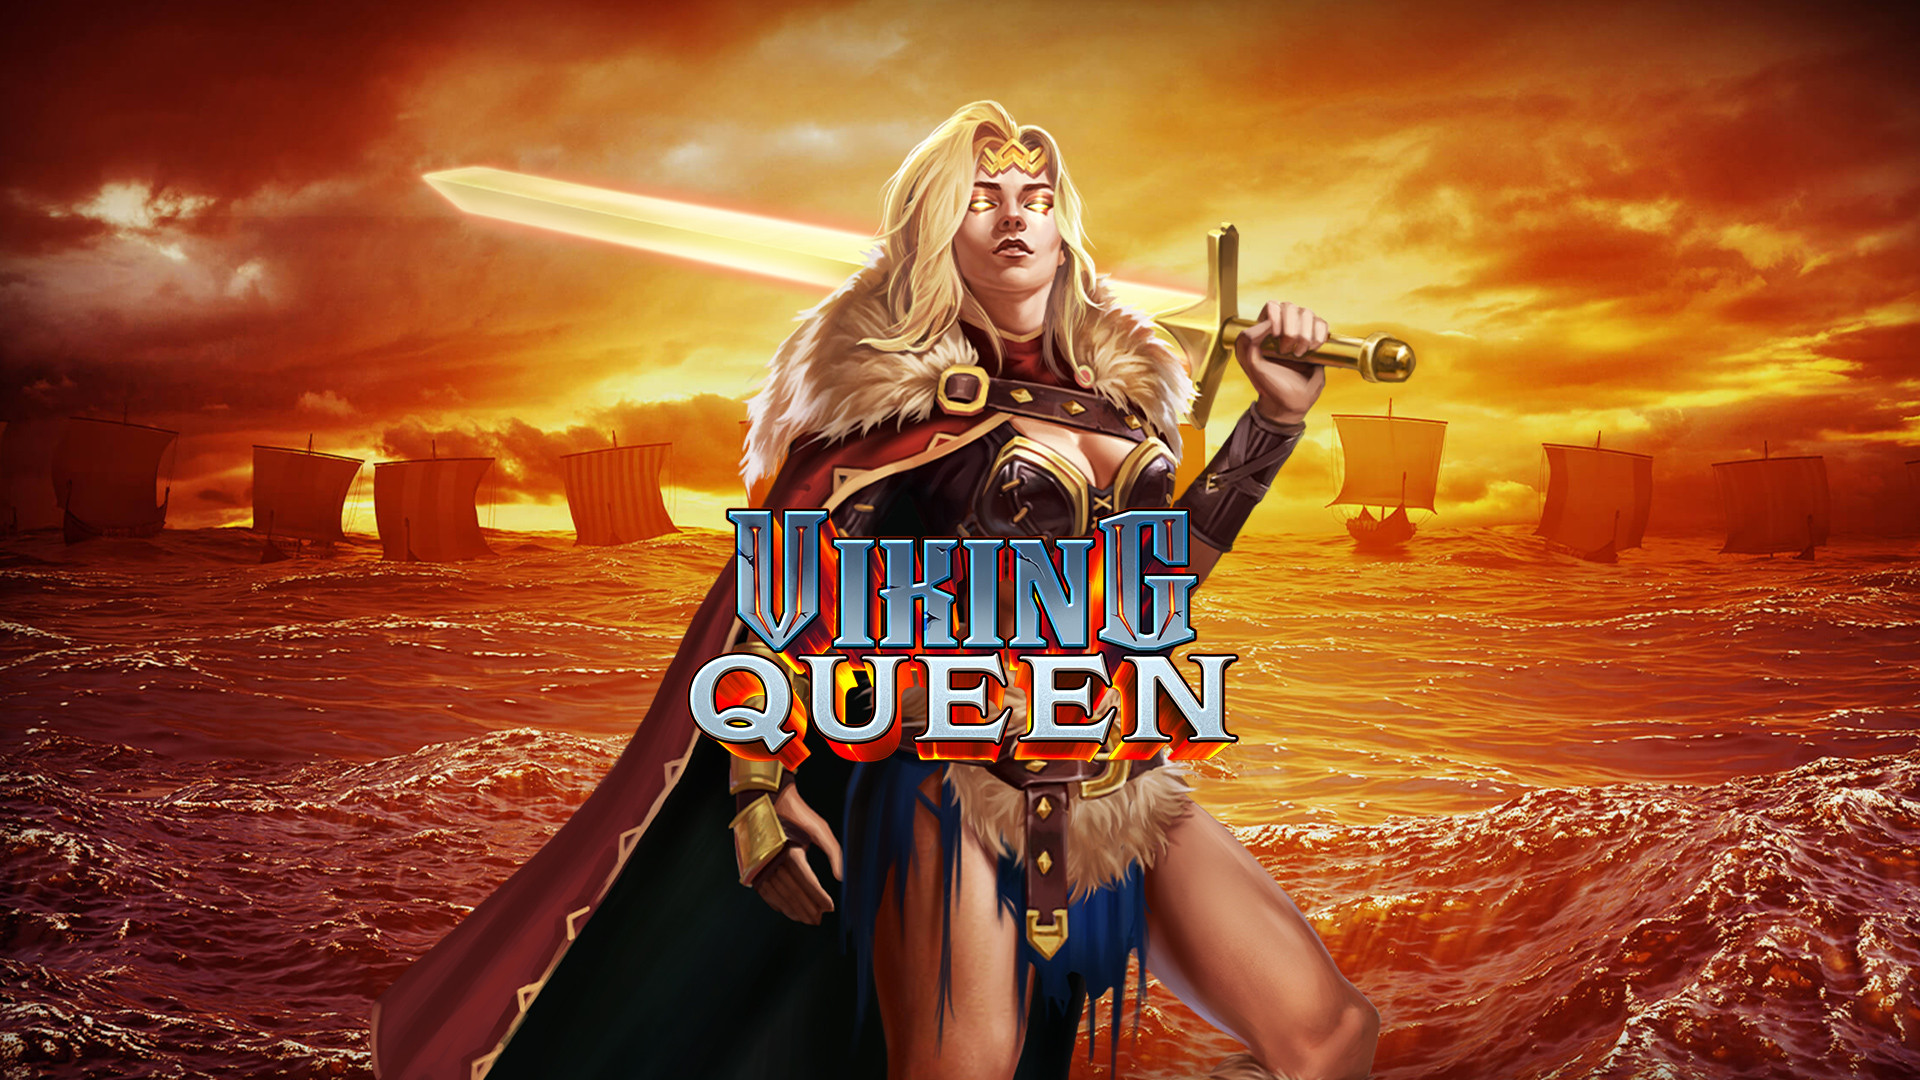 Viking Queen